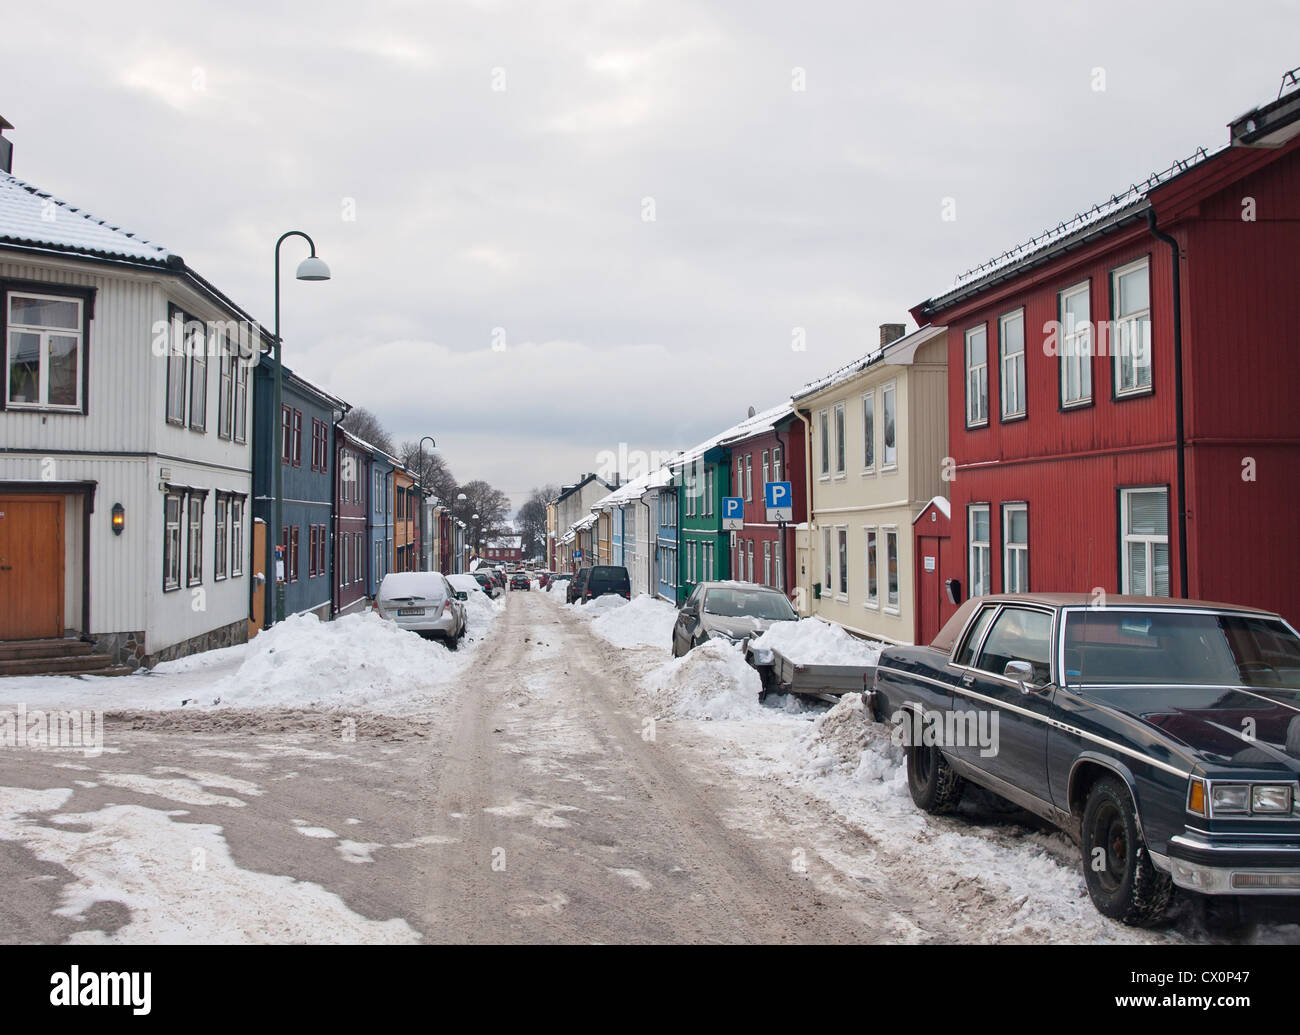 Invierno en Oslo, Noruega, una calle de Vålerenga con antiguas casas de madera, la nieve no eliminados y los problemas de aparcamiento para el residente Foto de stock